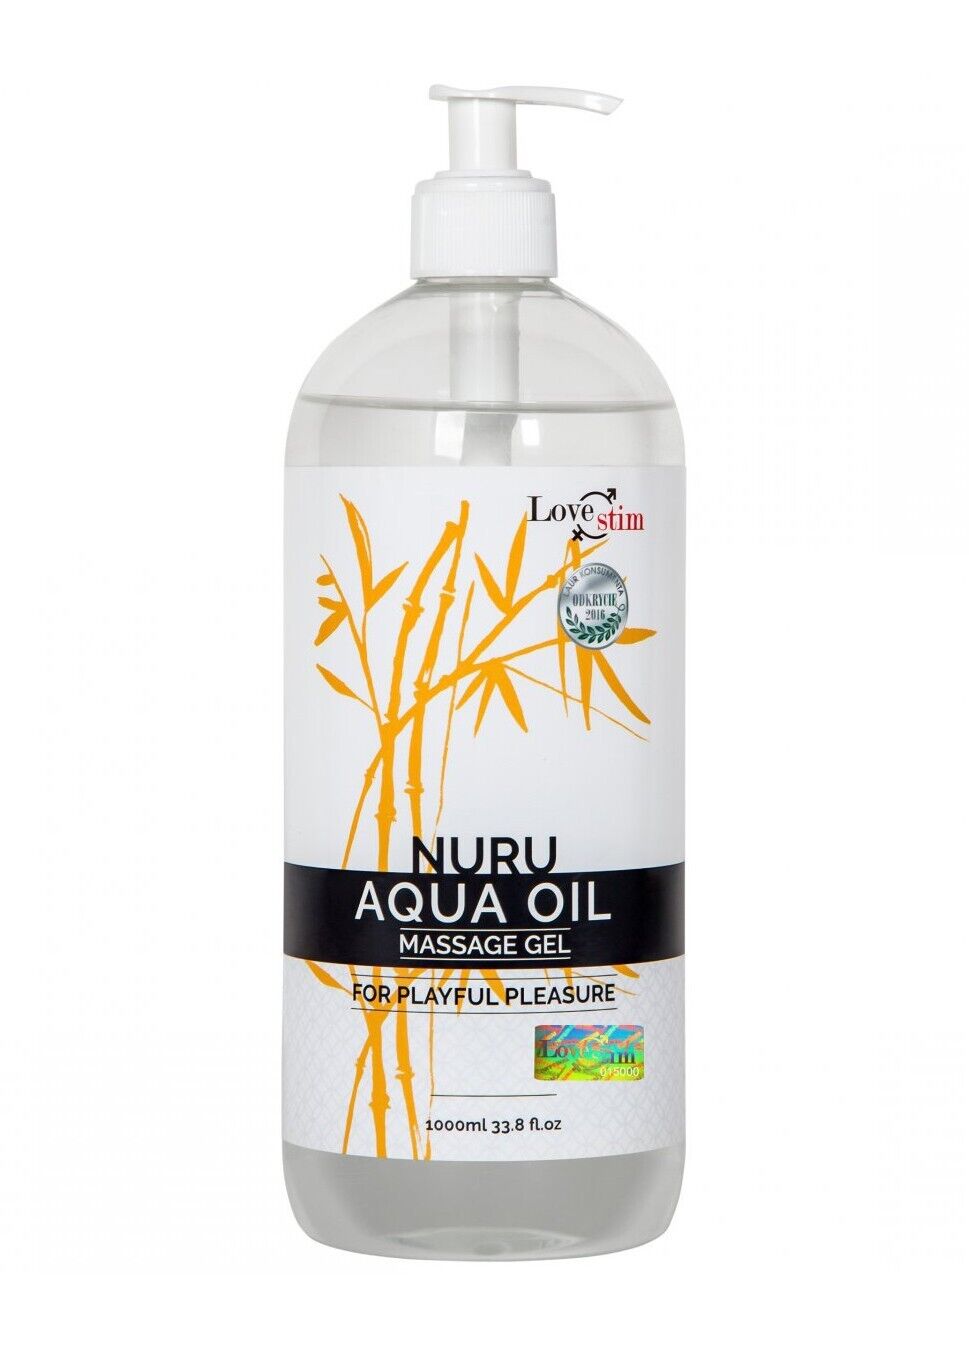 NURU AQUA OIL 1 Ltr. Massageöl für erotische Körpermassagen Body-to-Body-Massage